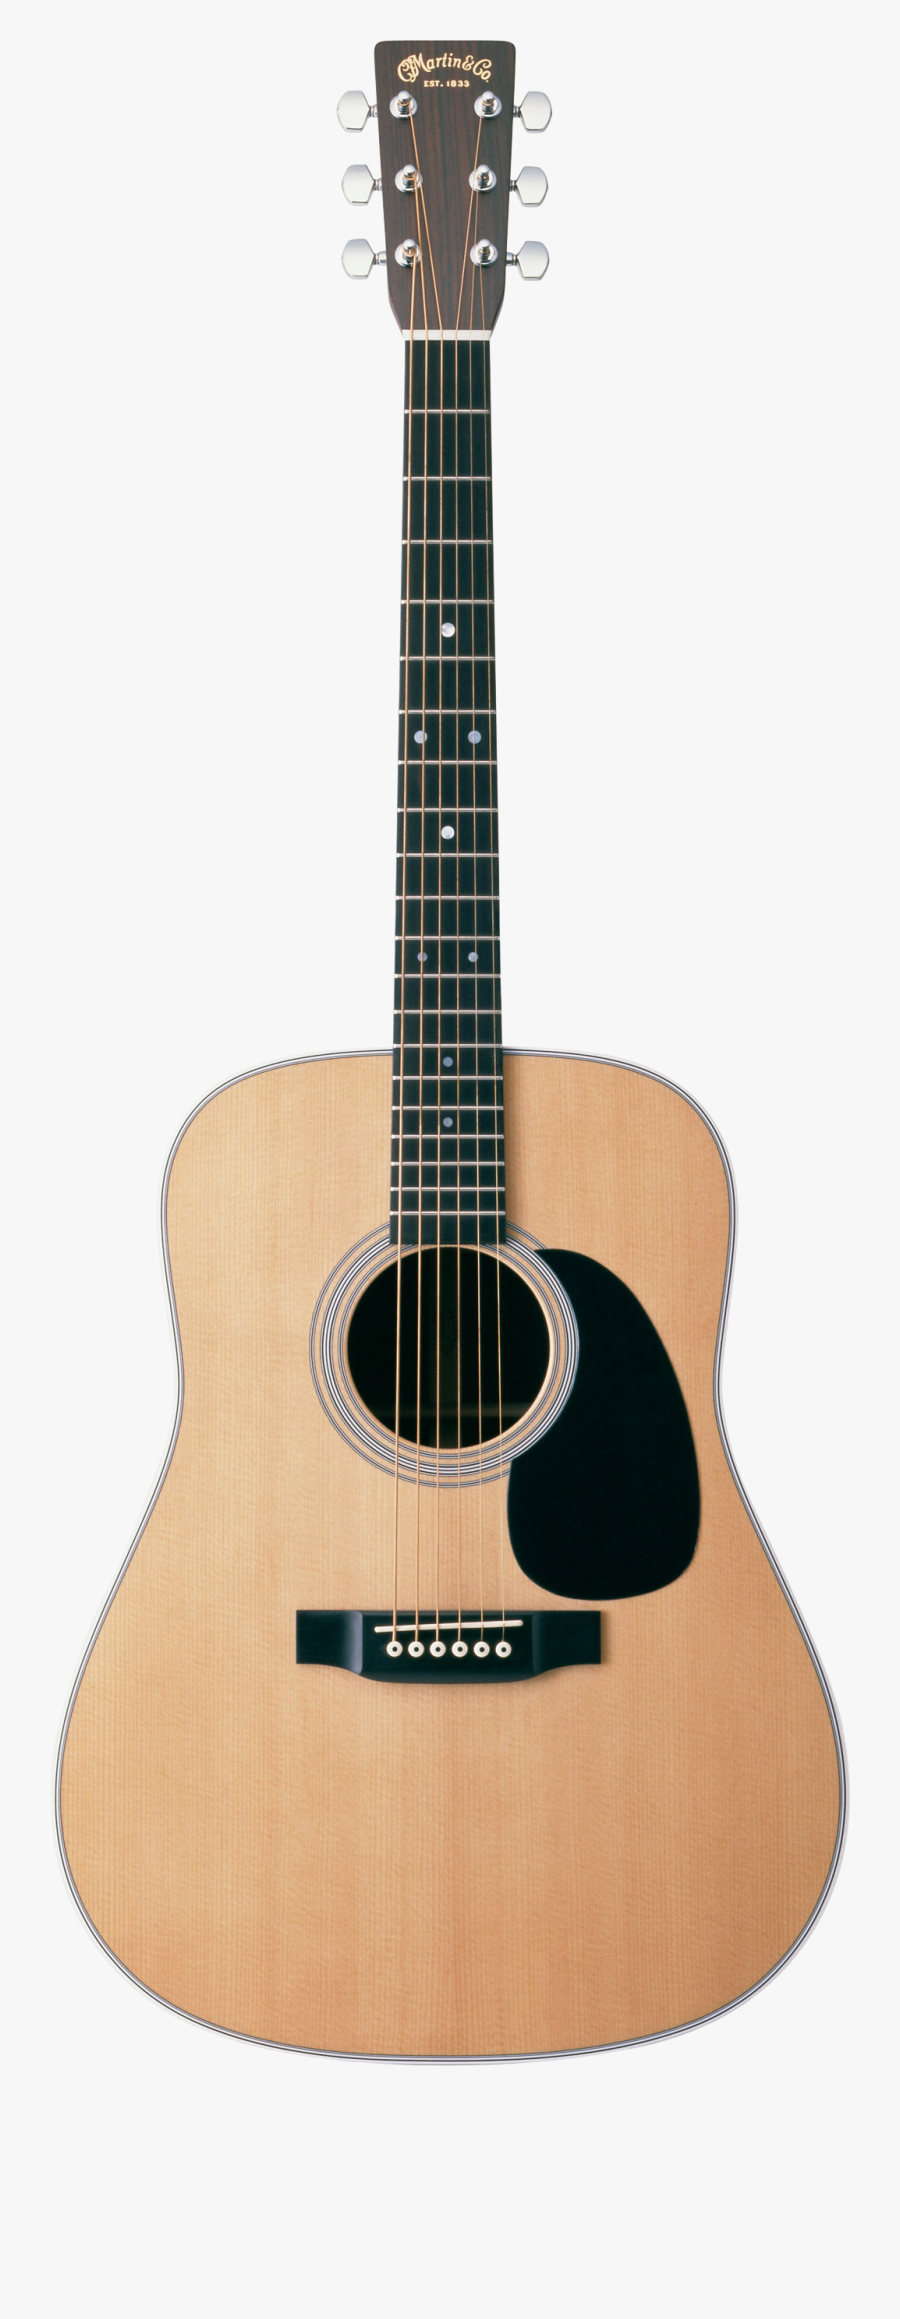 Mexican Guitar Png - Martin Hd 28, Transparent Clipart